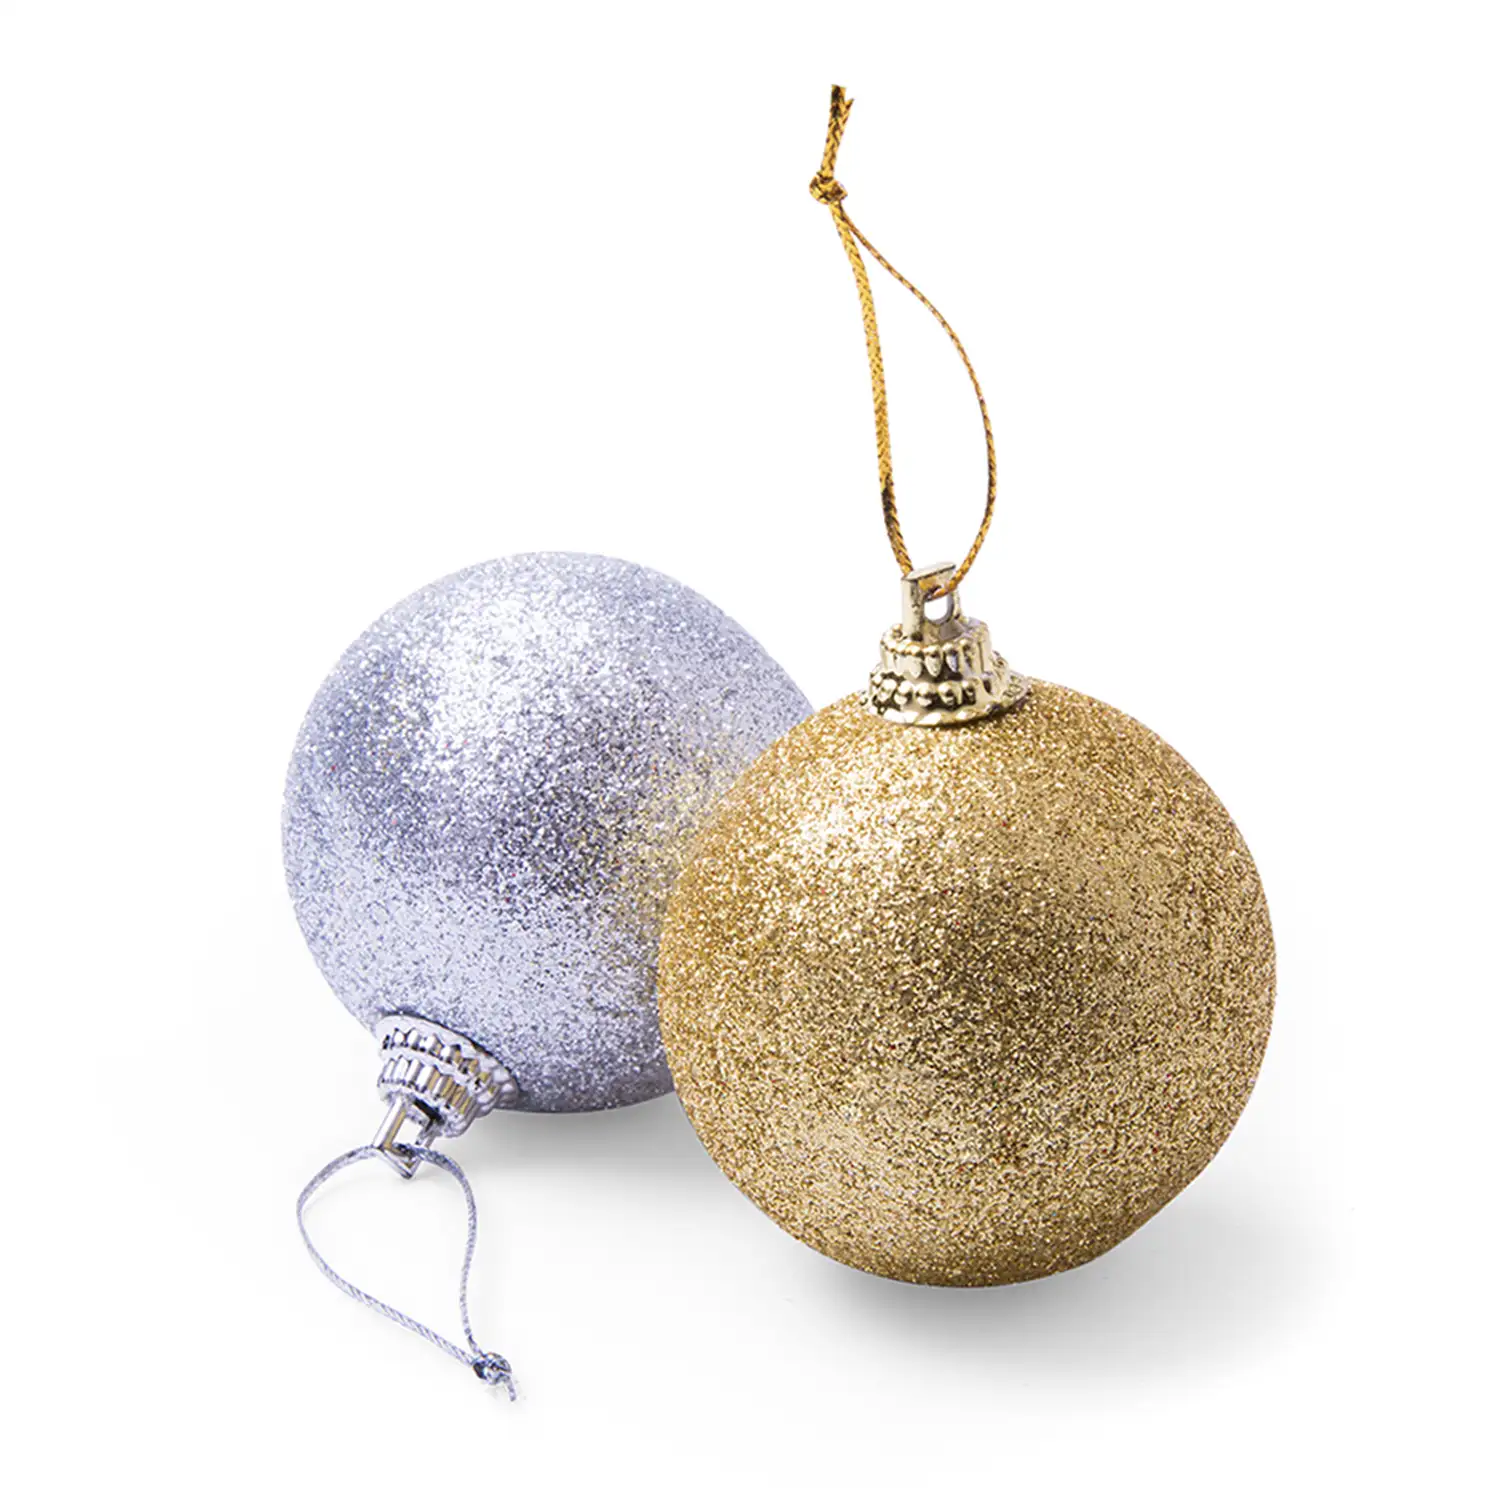 Pack de 6 bolas de navidad para colgar en colores metalizados plata y dorado.